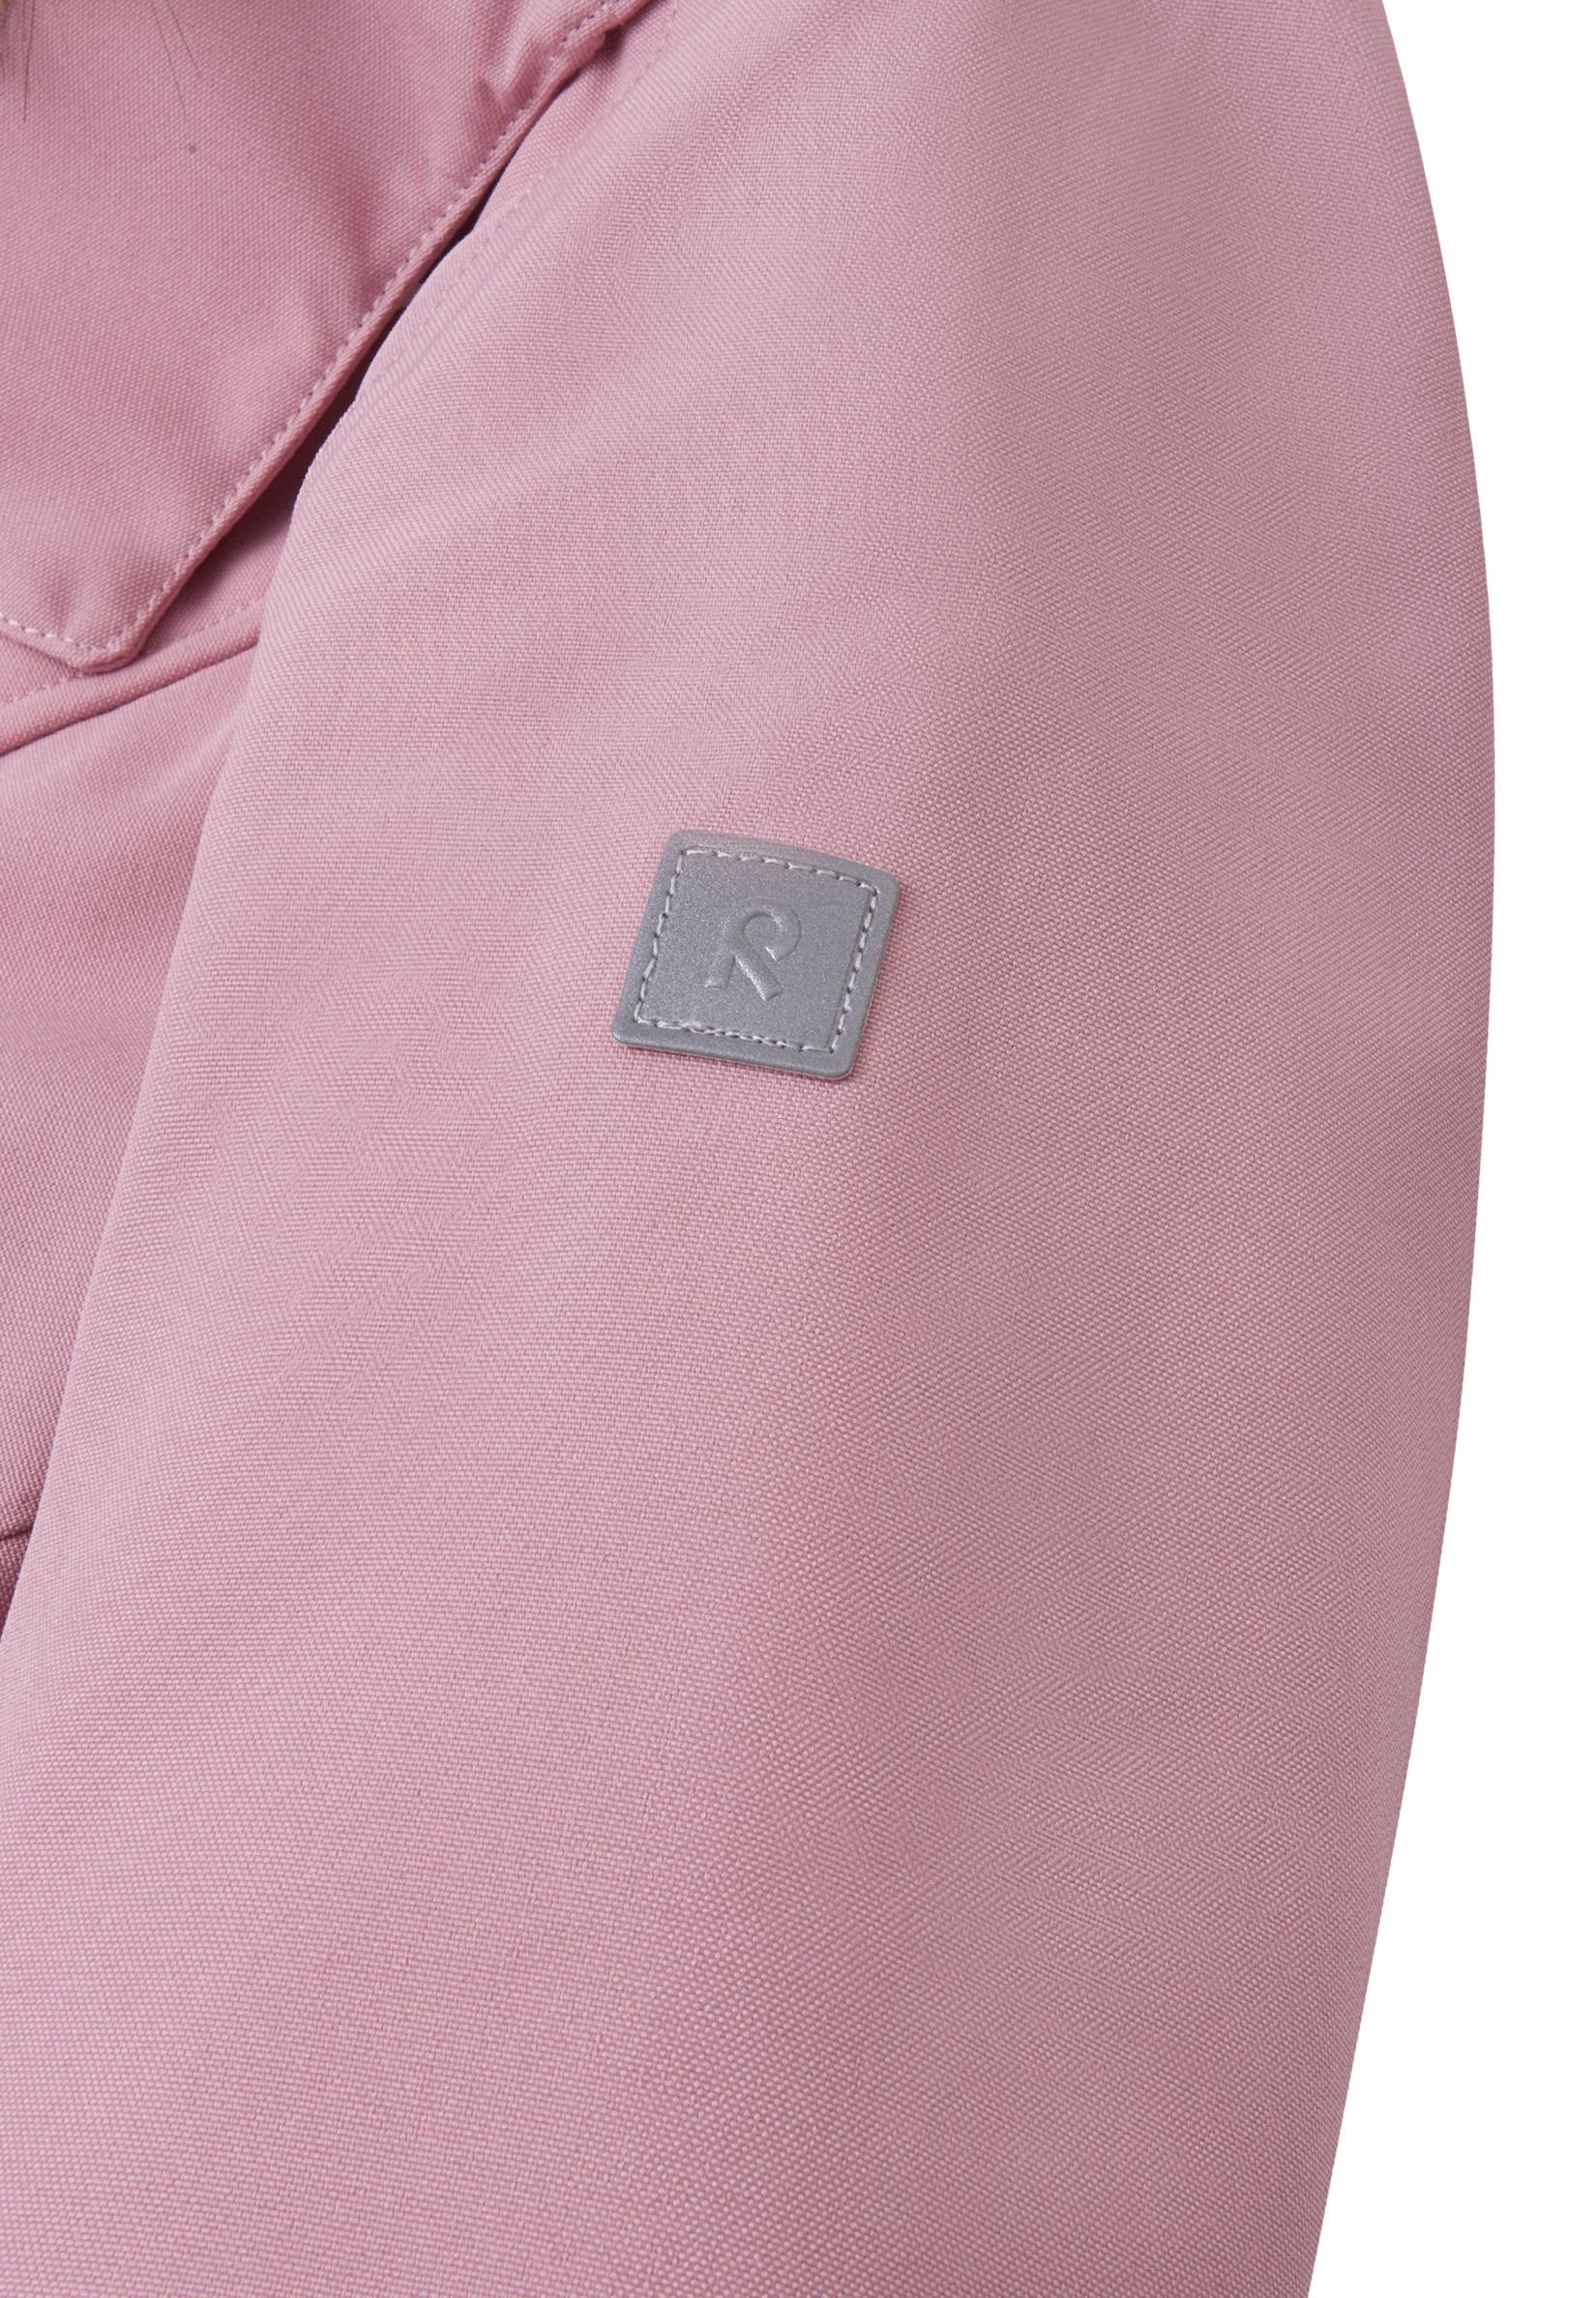 reima Pink Futtermaterial Trondheim wärmend und Schneeoverall atmungsaktiv und Grey bluesign®-zertifiziertes Haupt- wasserdicht,